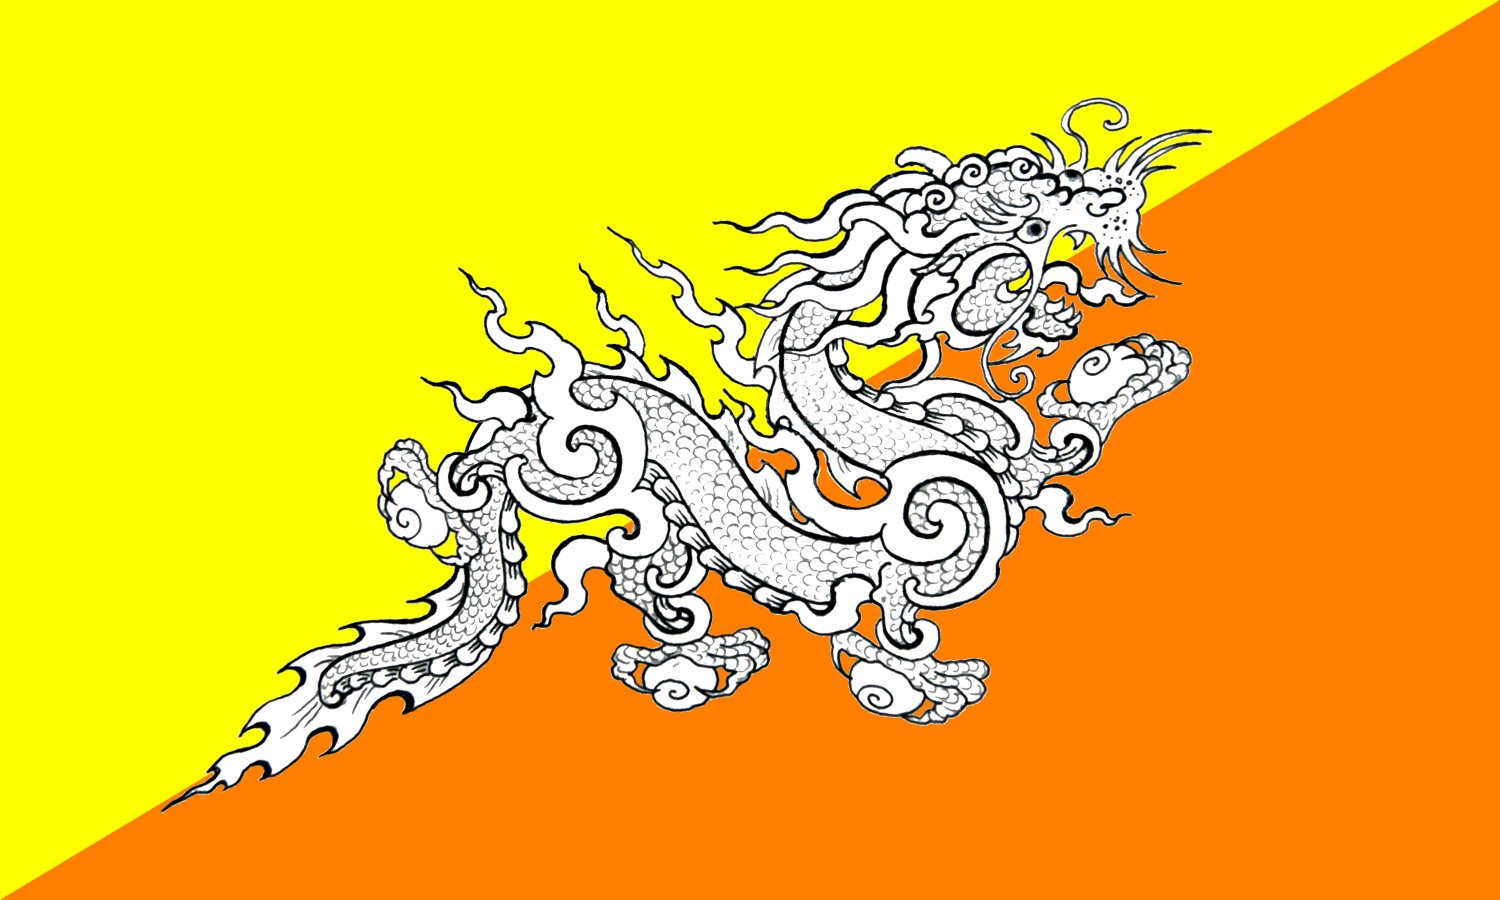 Bhutan's flag